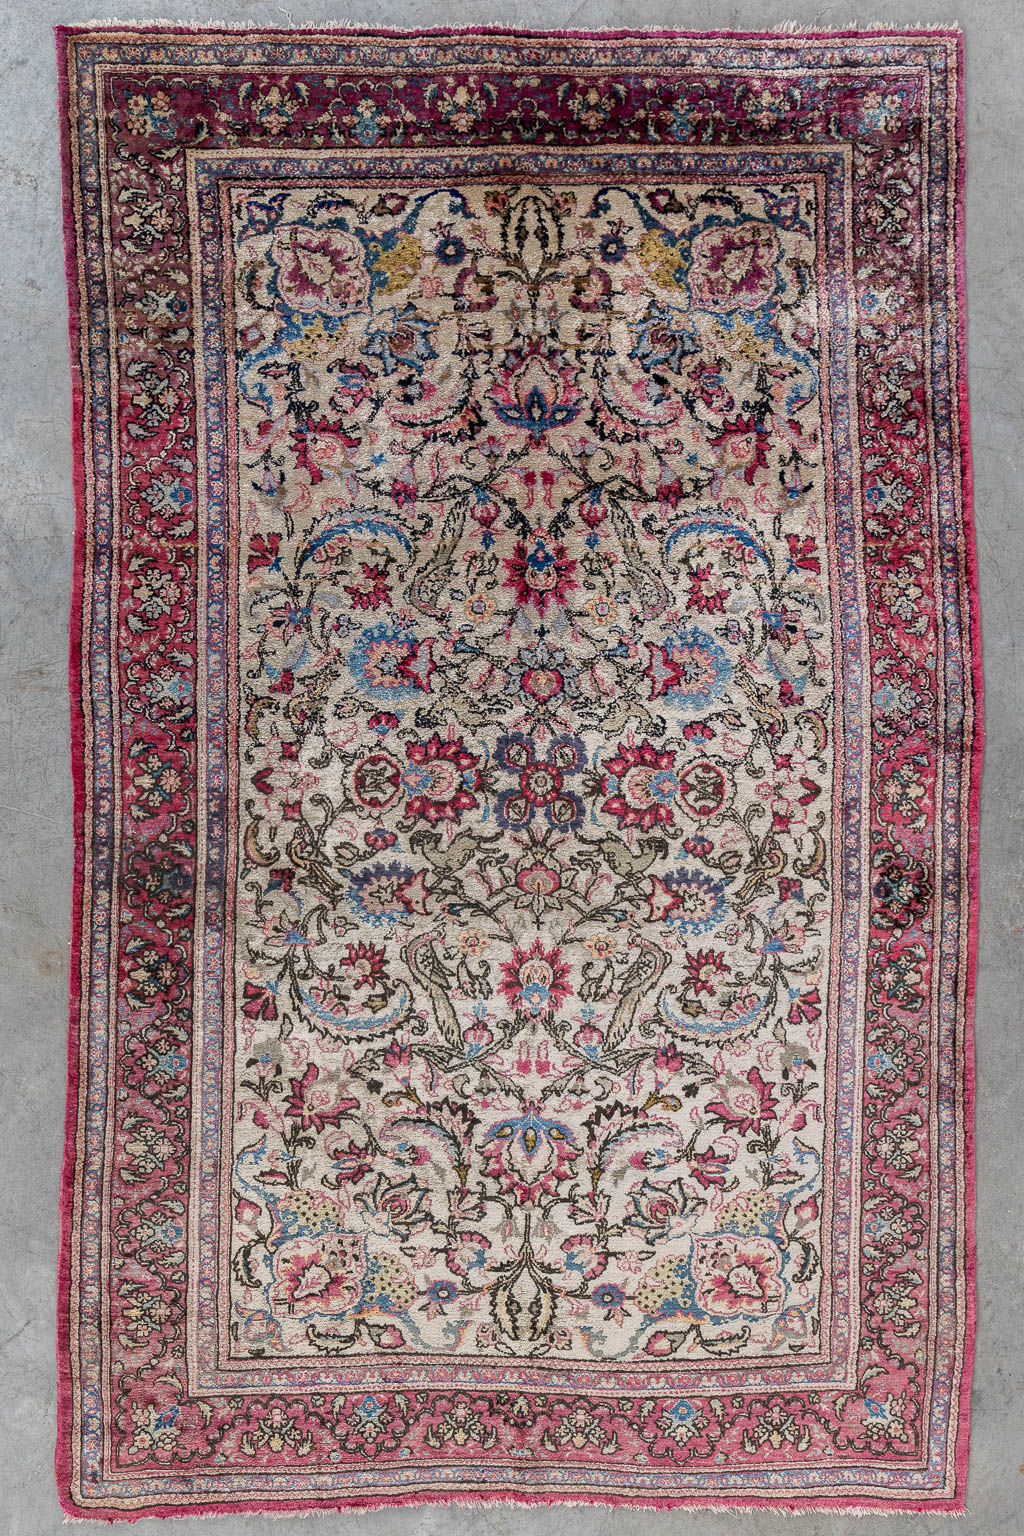 Lot 219 Een Oosters handgeknoopt tapijt, Kashan, zijde. (L:210 x W:135 cm)